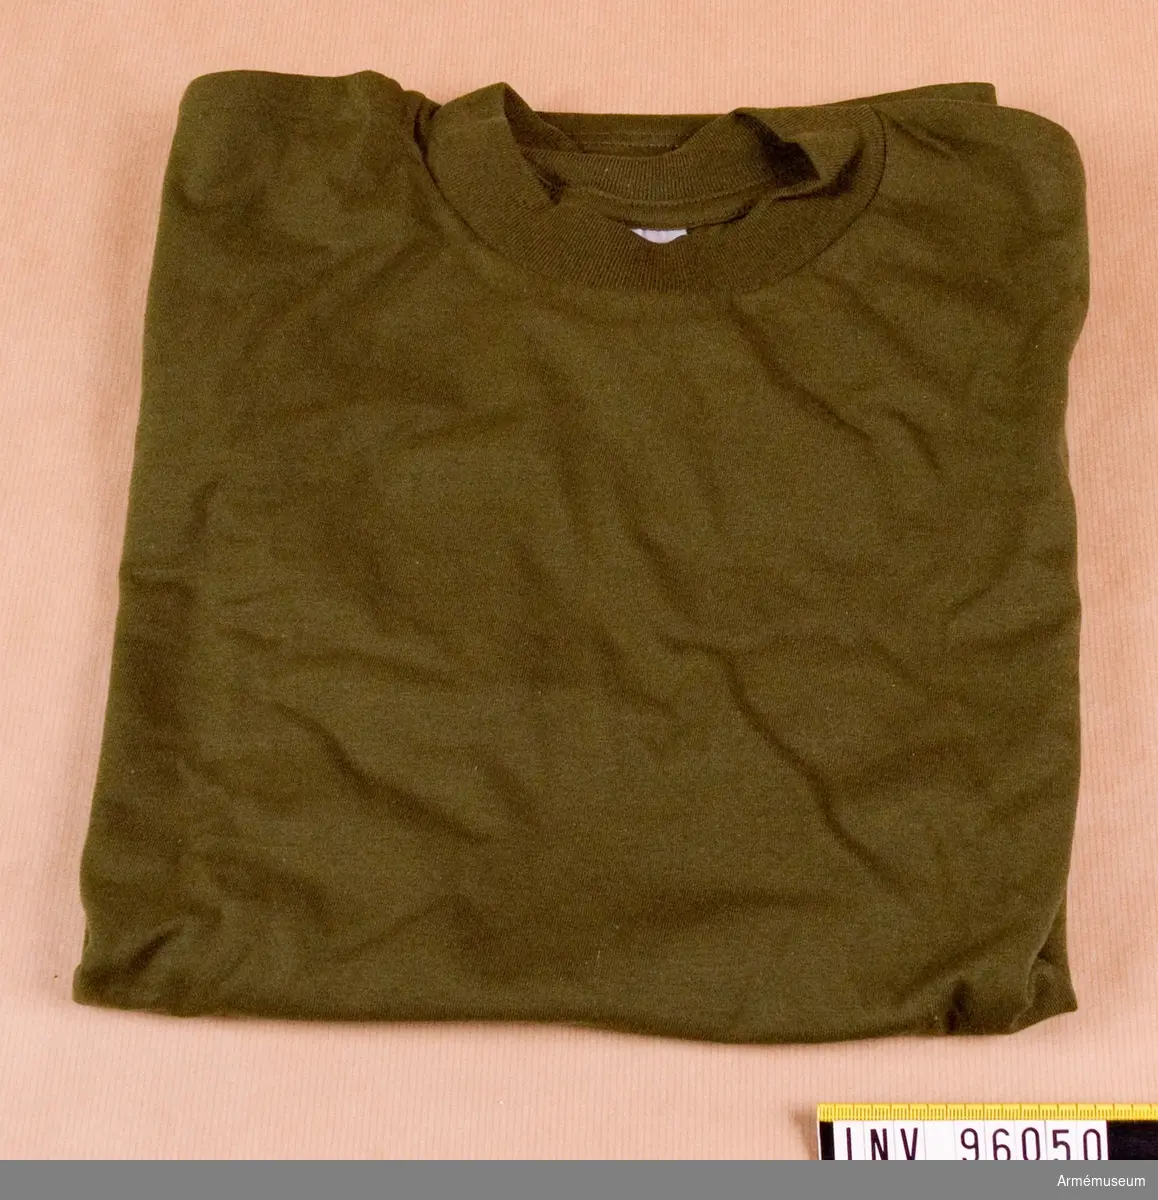 Kortärmad, grön, t-shirt, stickad av 100% ringspunnen bomull. Tröjan är tillverkad i singeljersey med halsmudd i 1:1 ribb. Tröjan låg förpackad tillsammans med ytterligare 5 i en polyetenpåse med etikett: "Arbetsmodell, T-shirt grön, M7321-161000-4, Eva Berglund, FMV:IntT 1995-04-11".